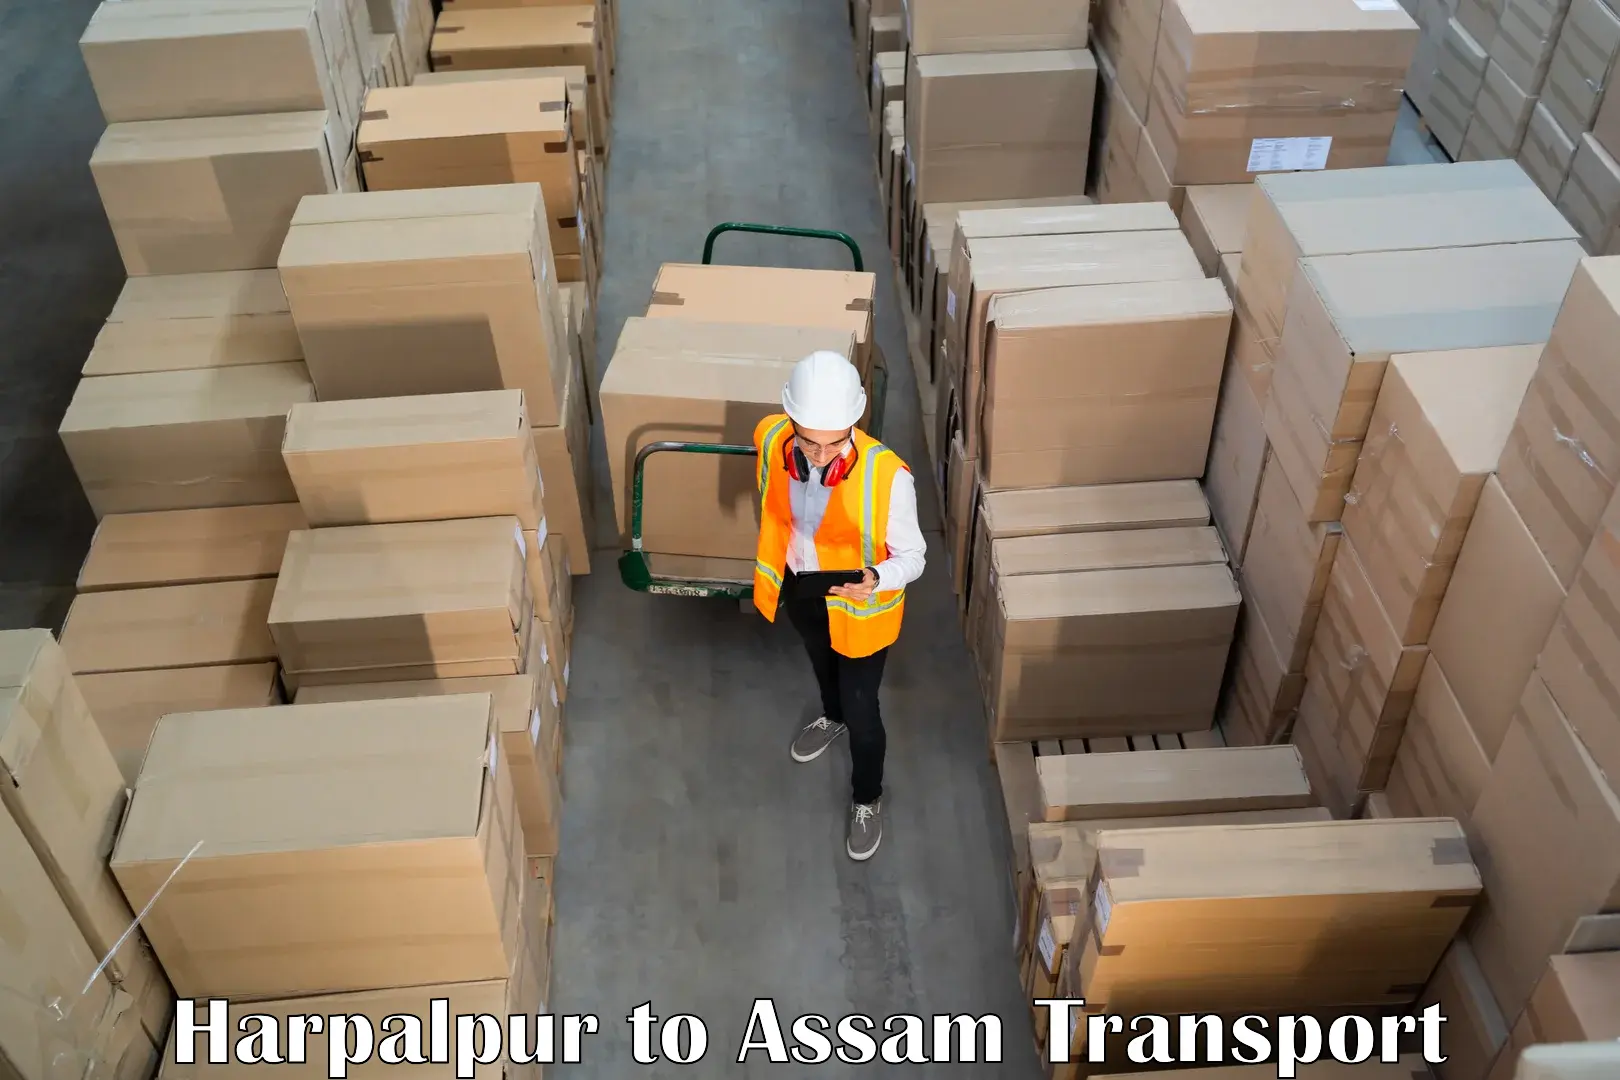 Nearest transport service Harpalpur to Gossaigaon